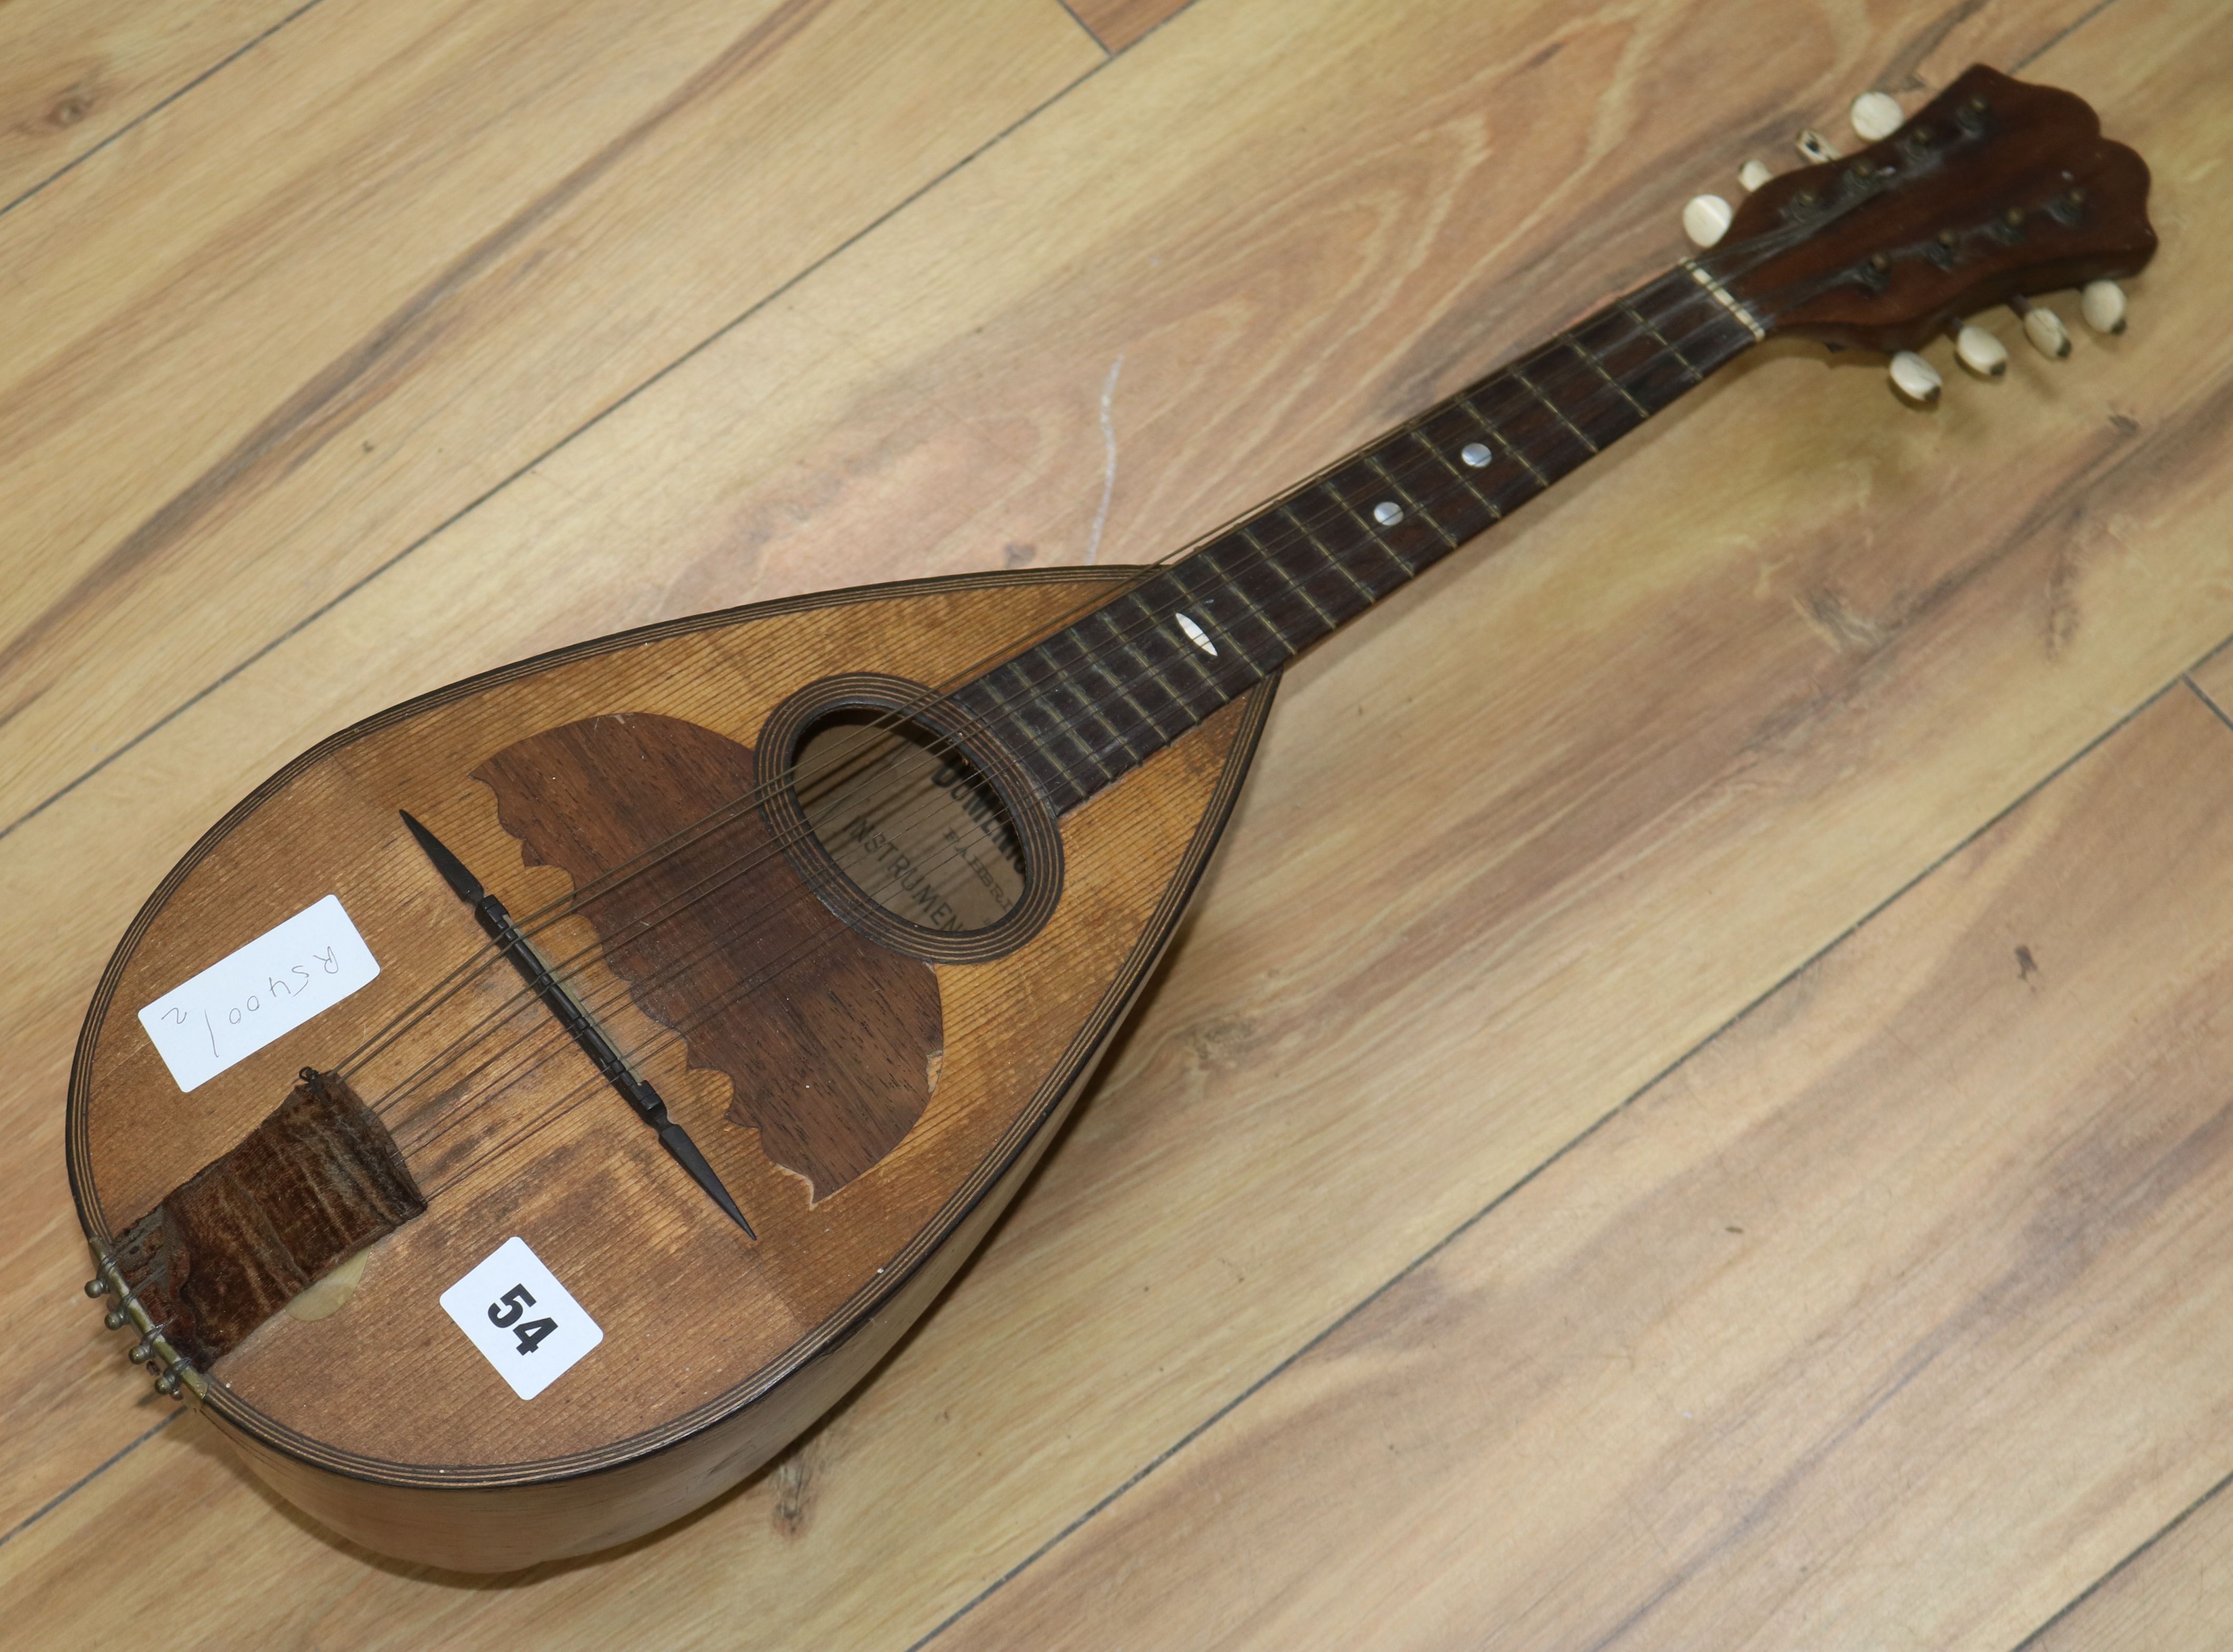 A Domenico Zanoni 19th century mandolin length 60cm